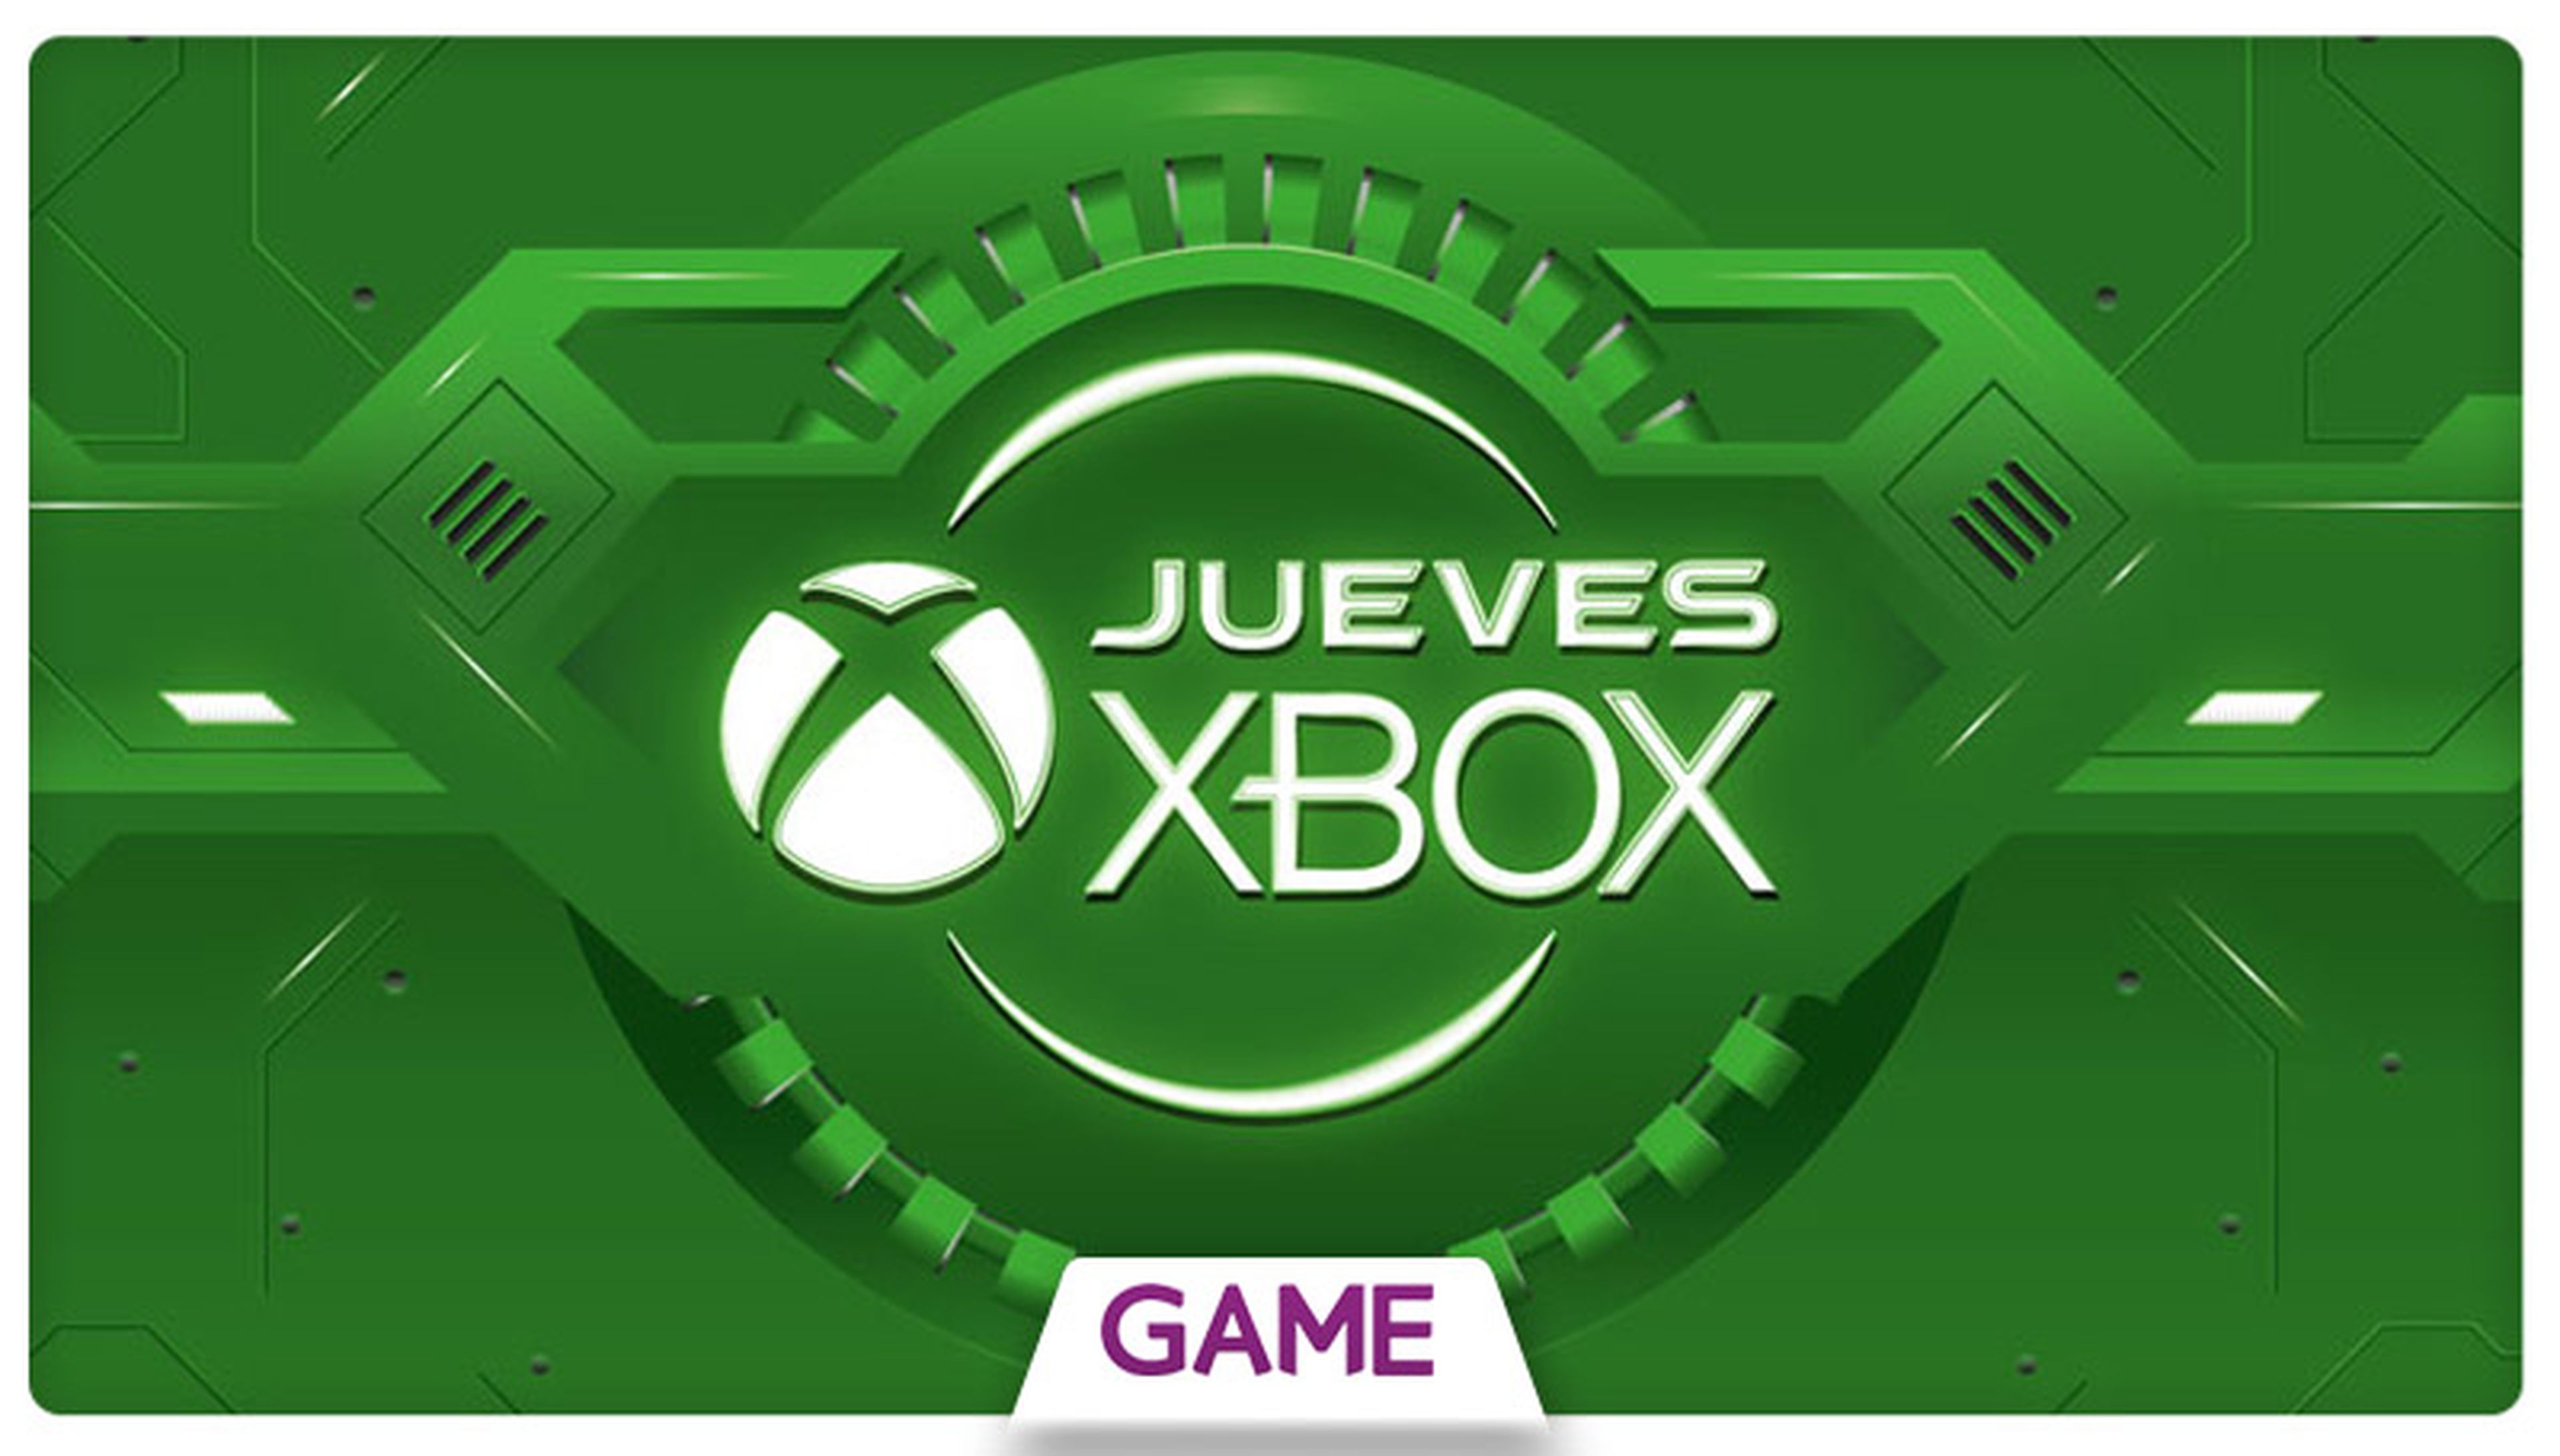 Jueves Xbox en GAME: Ofertas del 31/12/2015